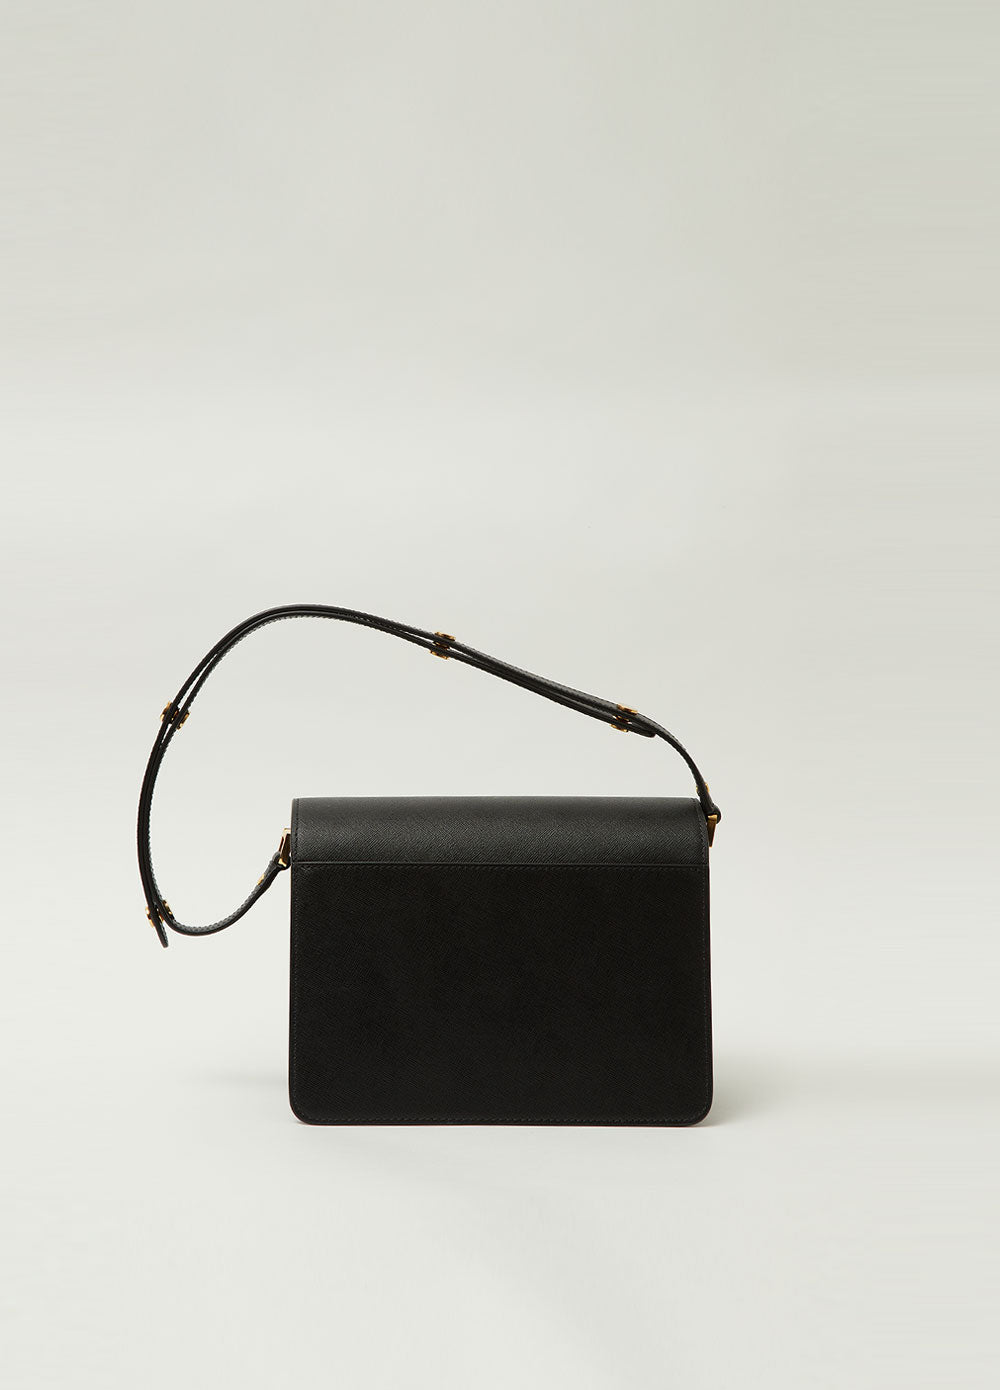 Marni - Black Nano Trunk Bag curated on LTK